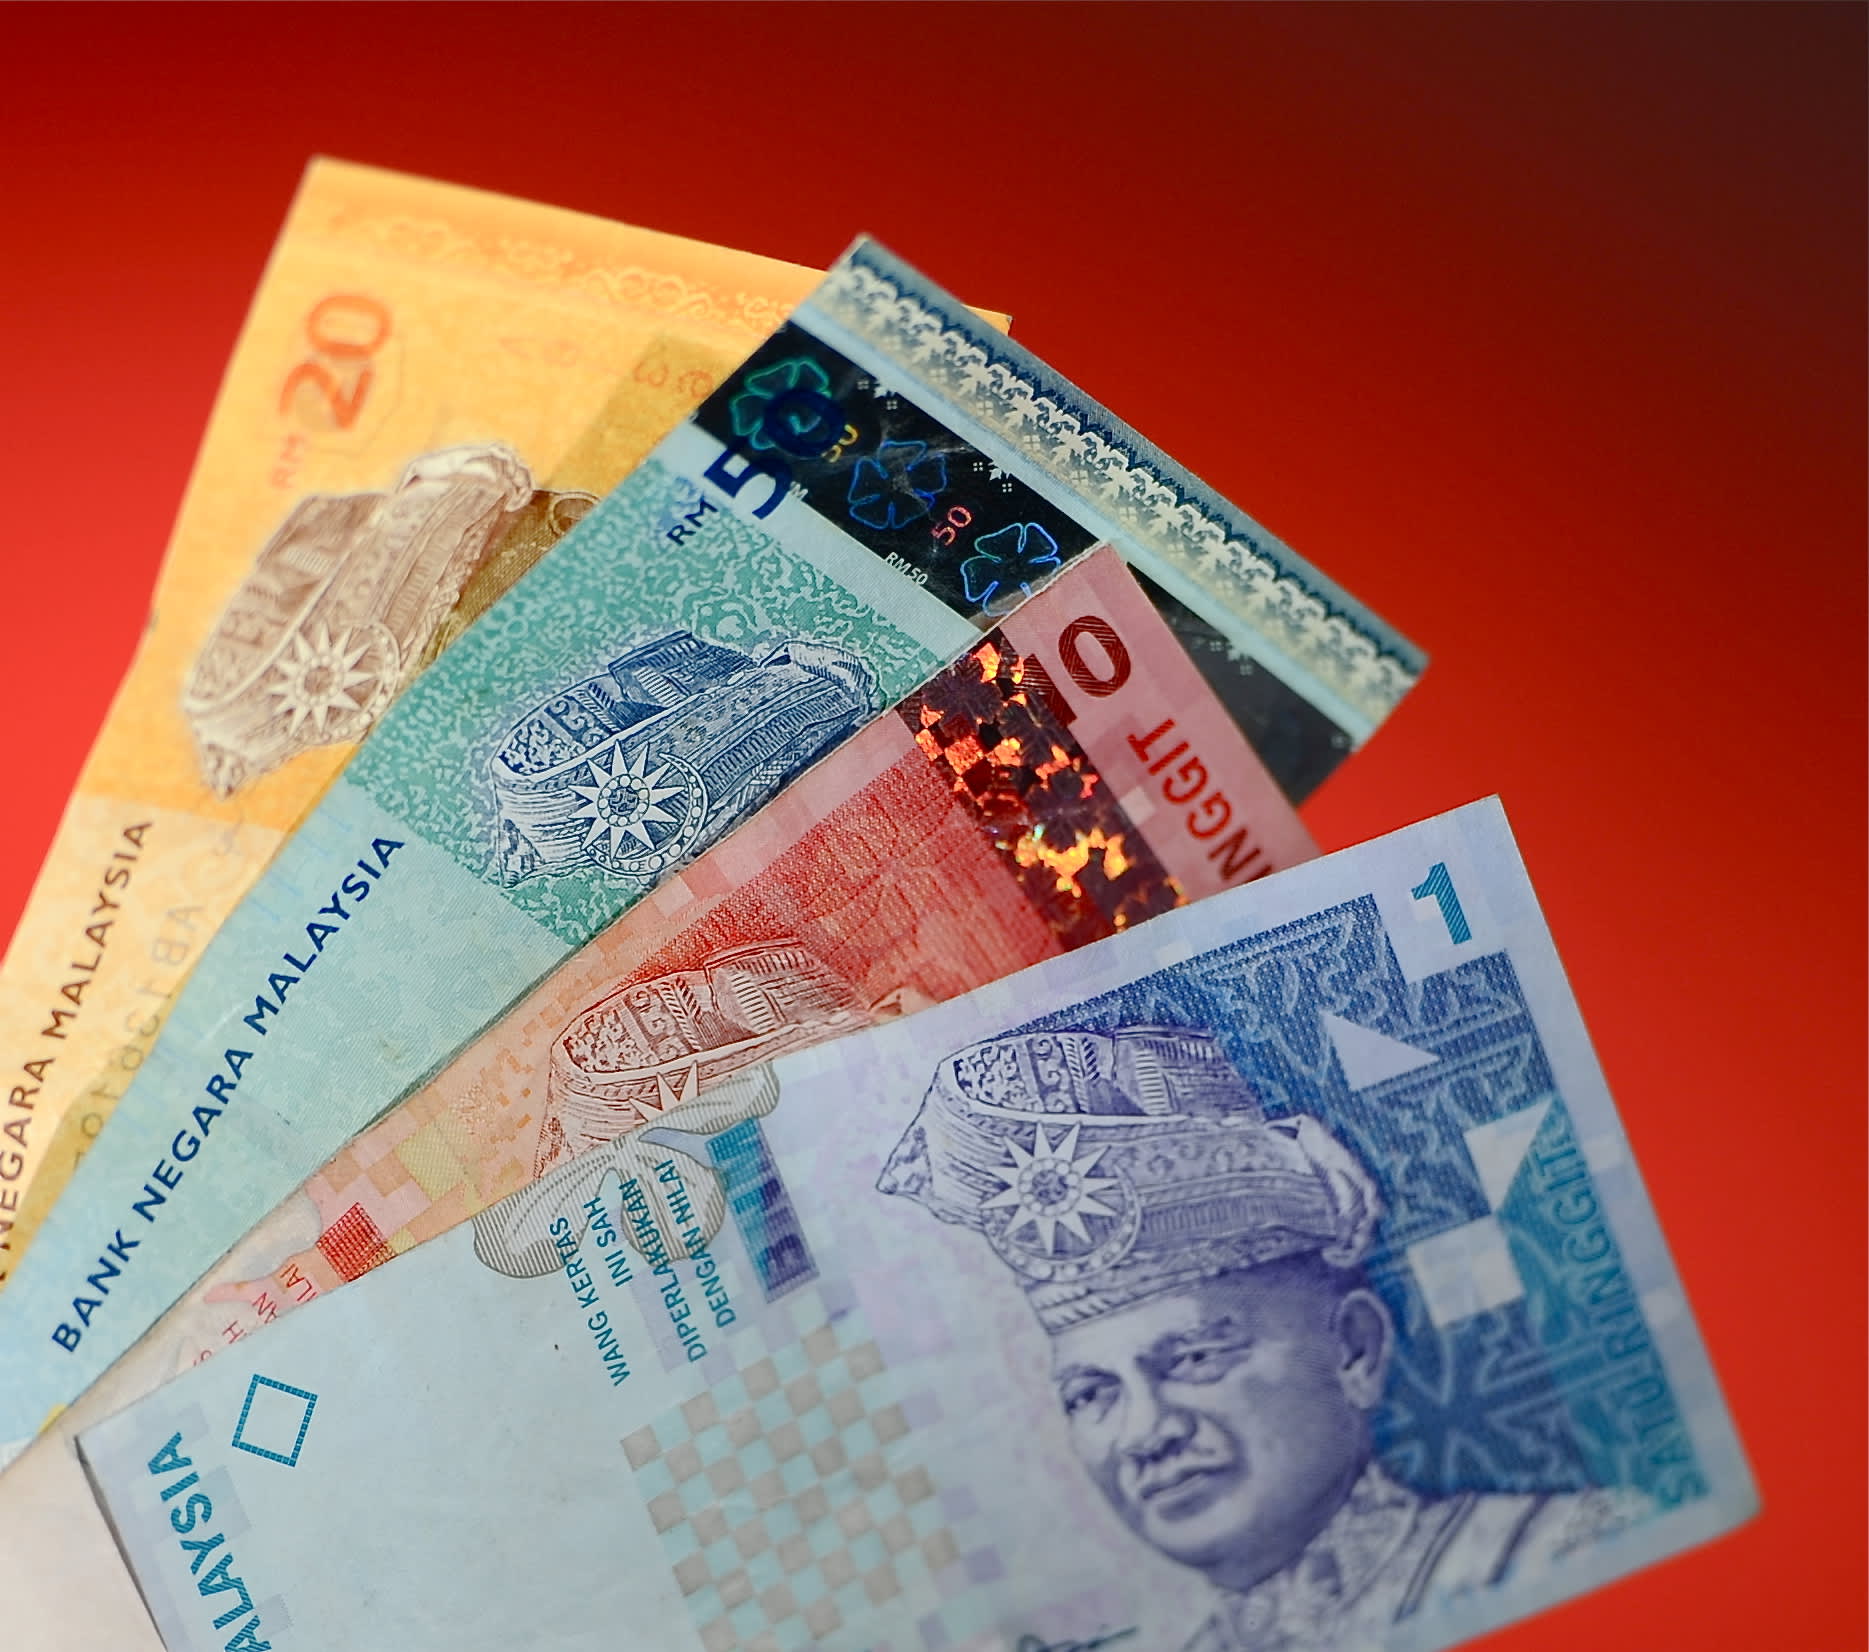 Indonesia ke malaysia translate duit Indonesian to